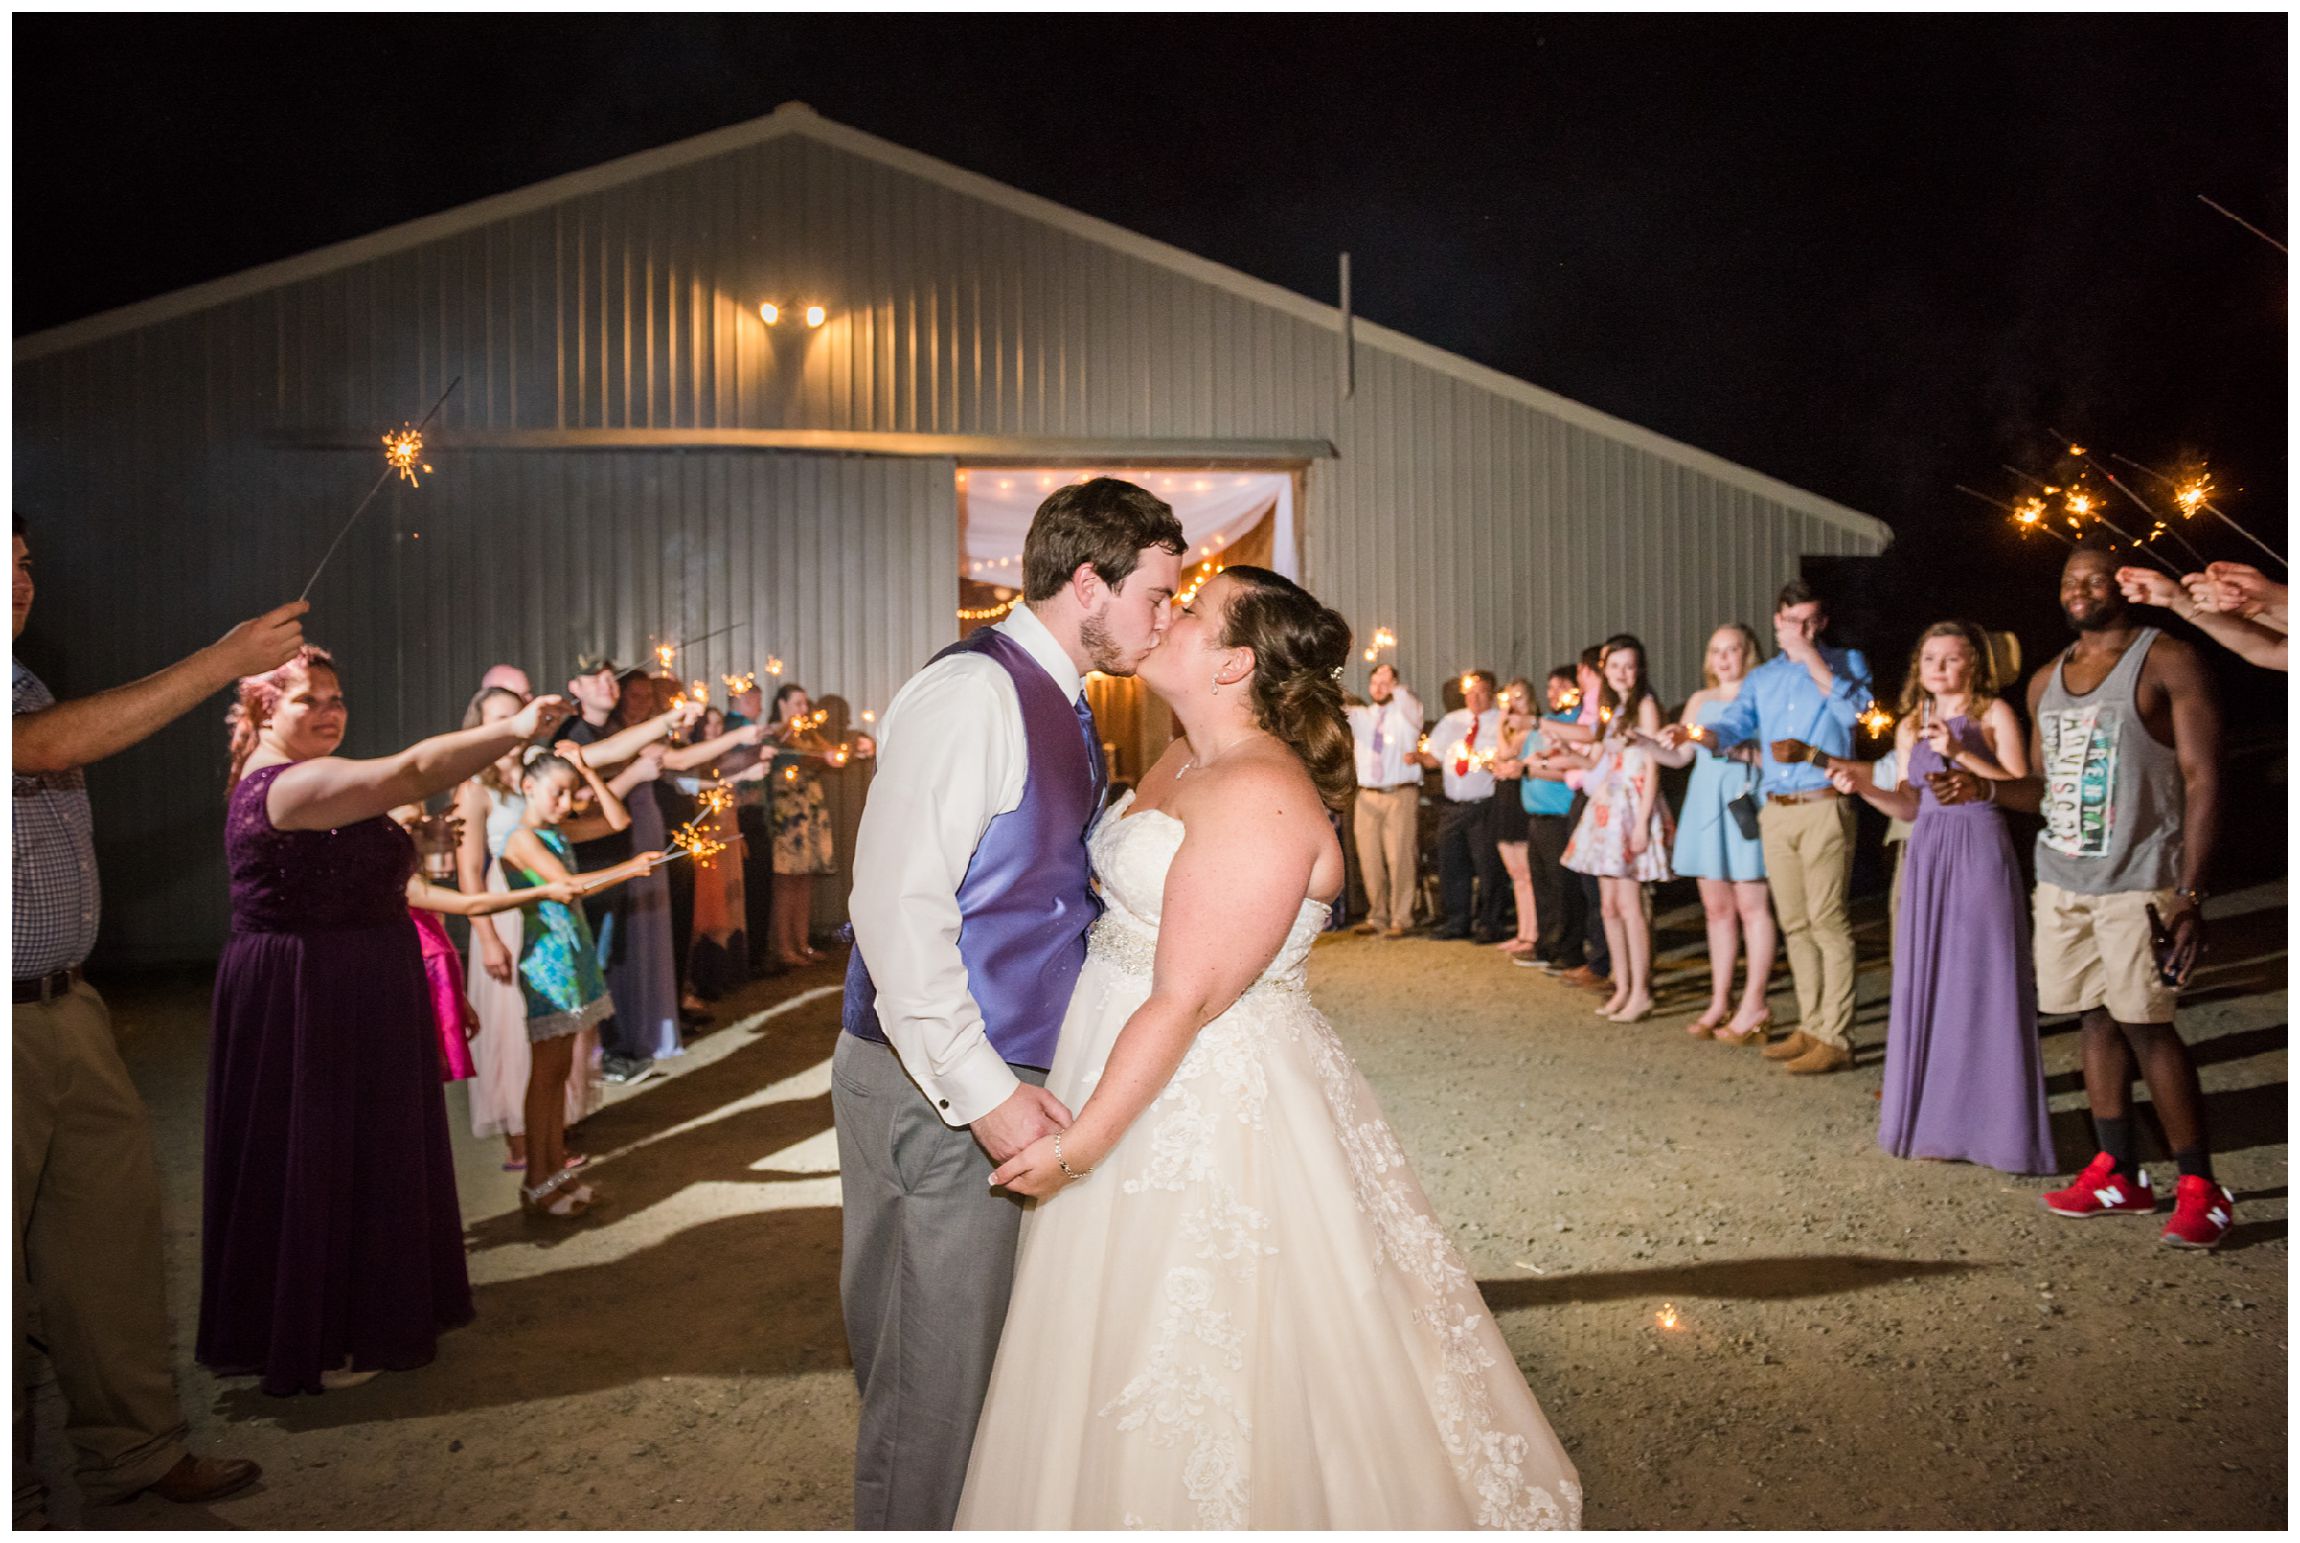 sparkler wedding reception send off at Wolftrap Farm in Gordonsville, Virginia